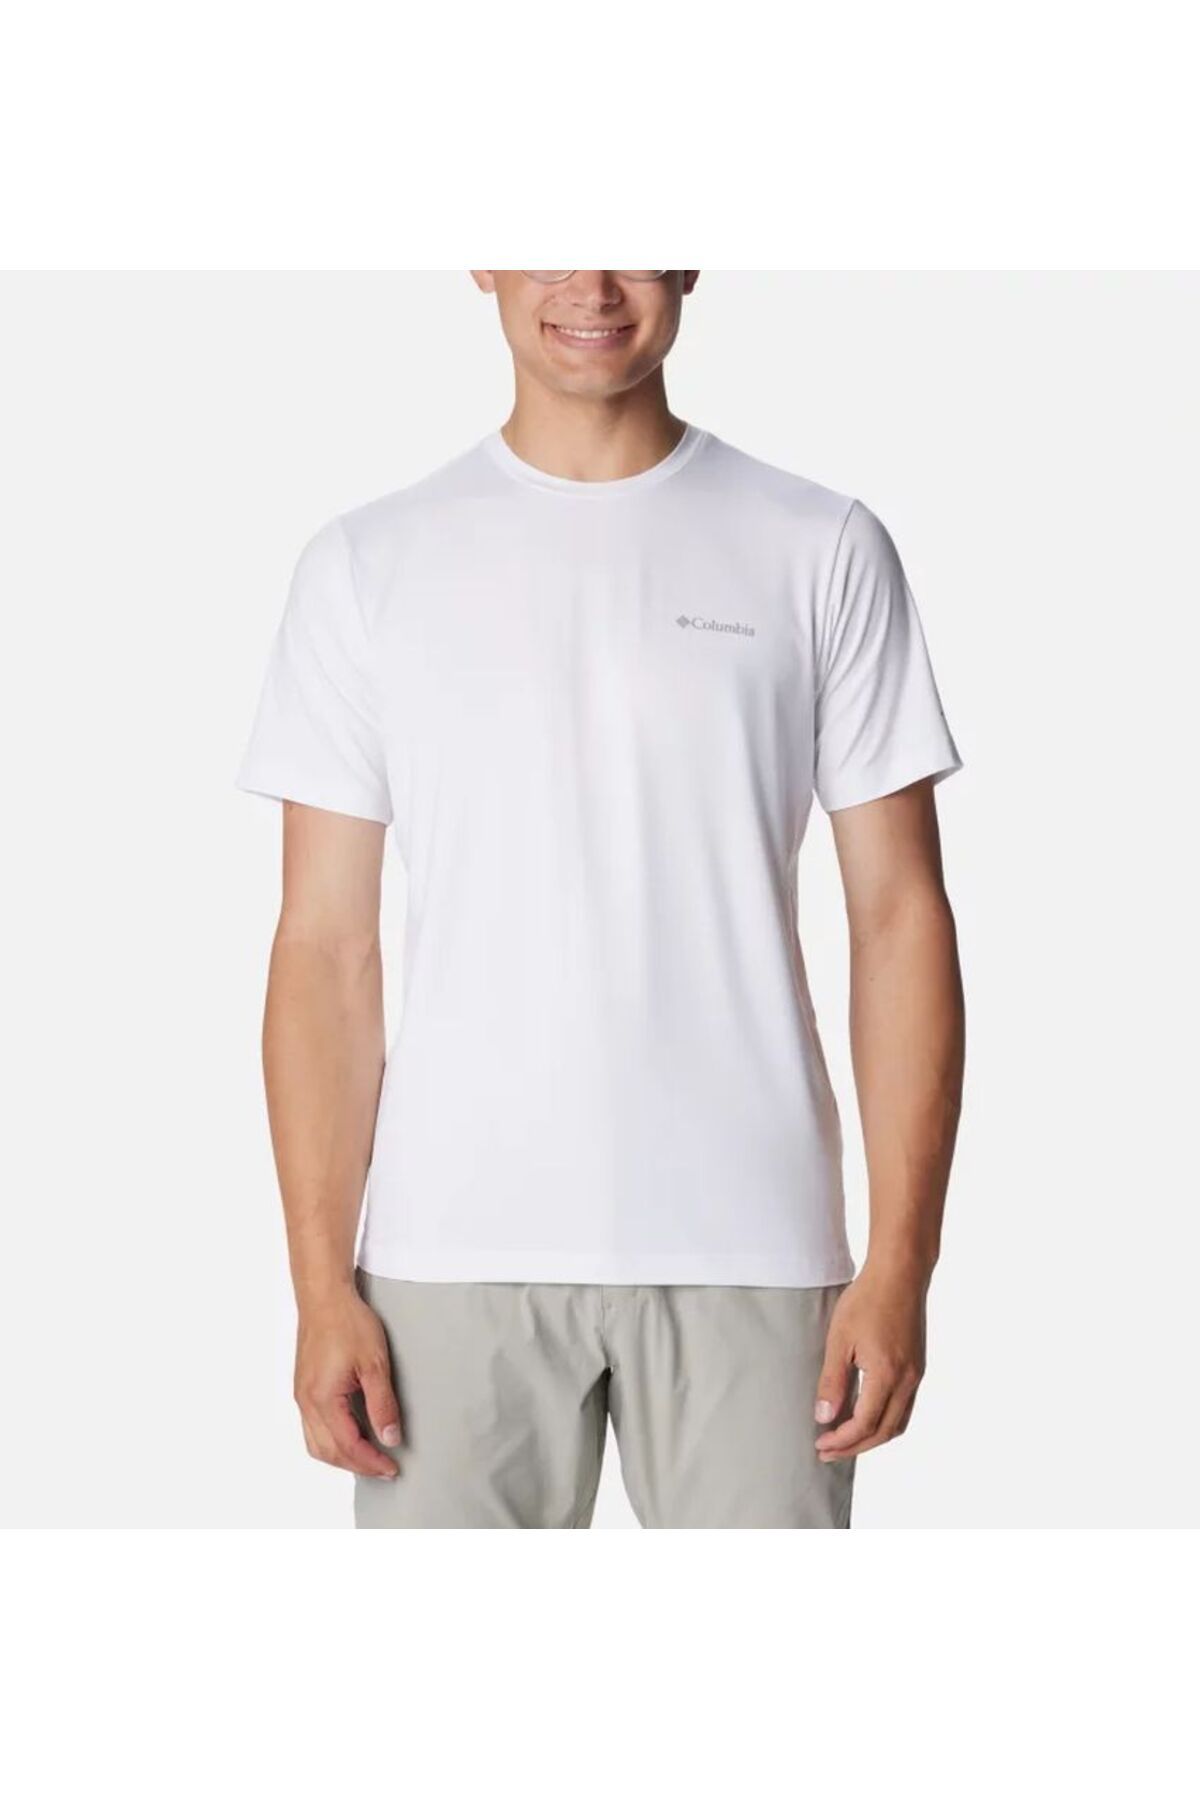 Columbia Men's Tech Trail™ Crew Neck Shirt II Erkek Tişört Beyaz AO5545-100